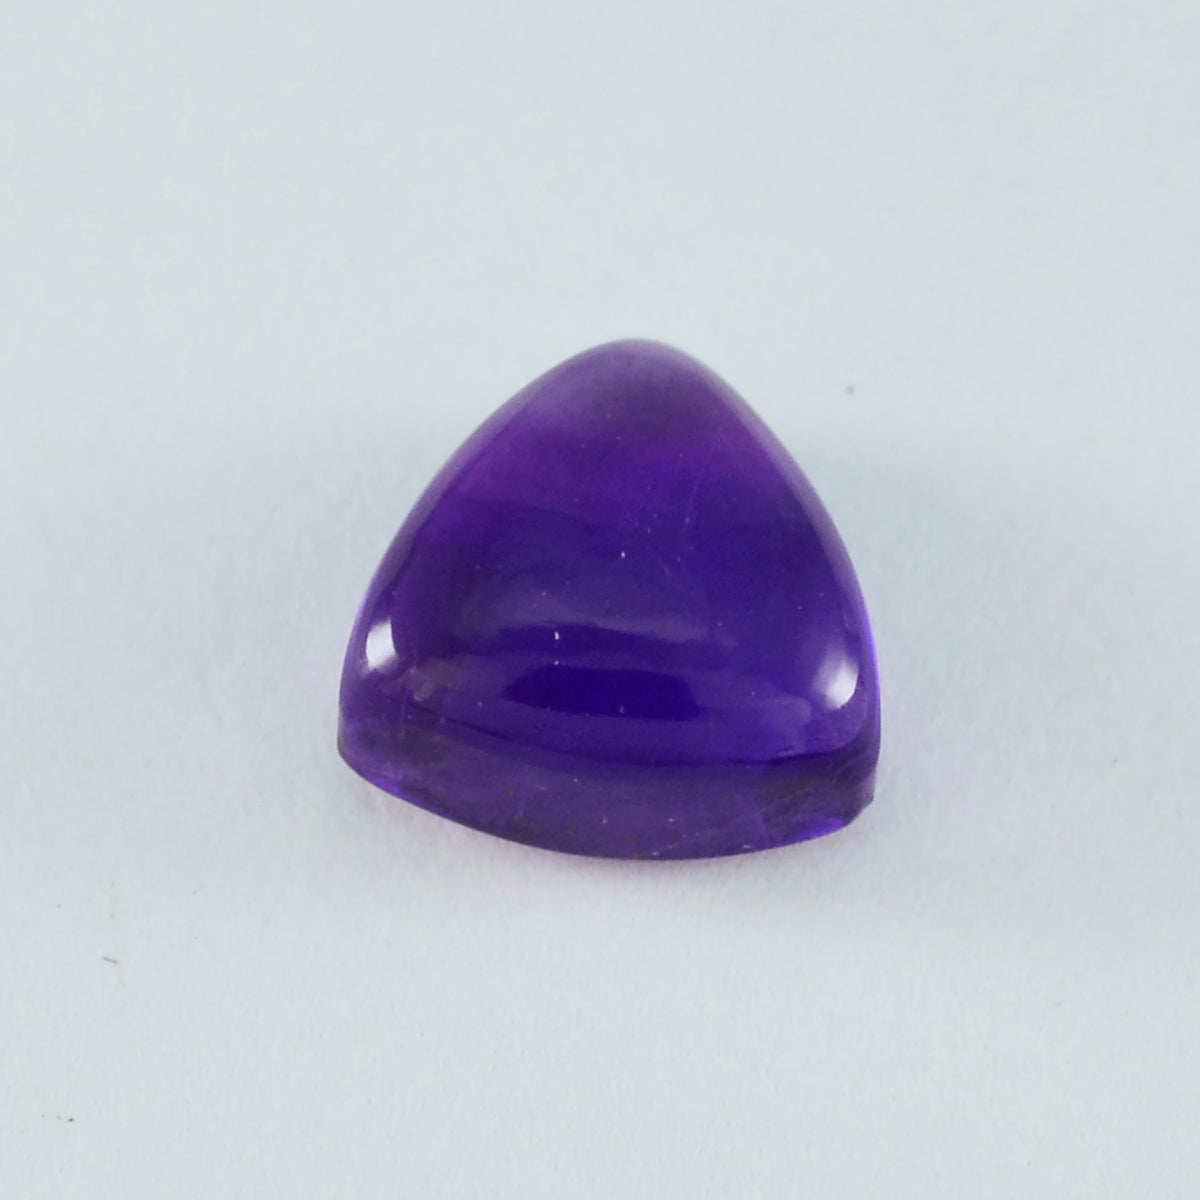 riyogems 1 шт., фиолетовый аметист, кабошон 9x9 мм, форма триллиона, сладкий качественный драгоценный камень